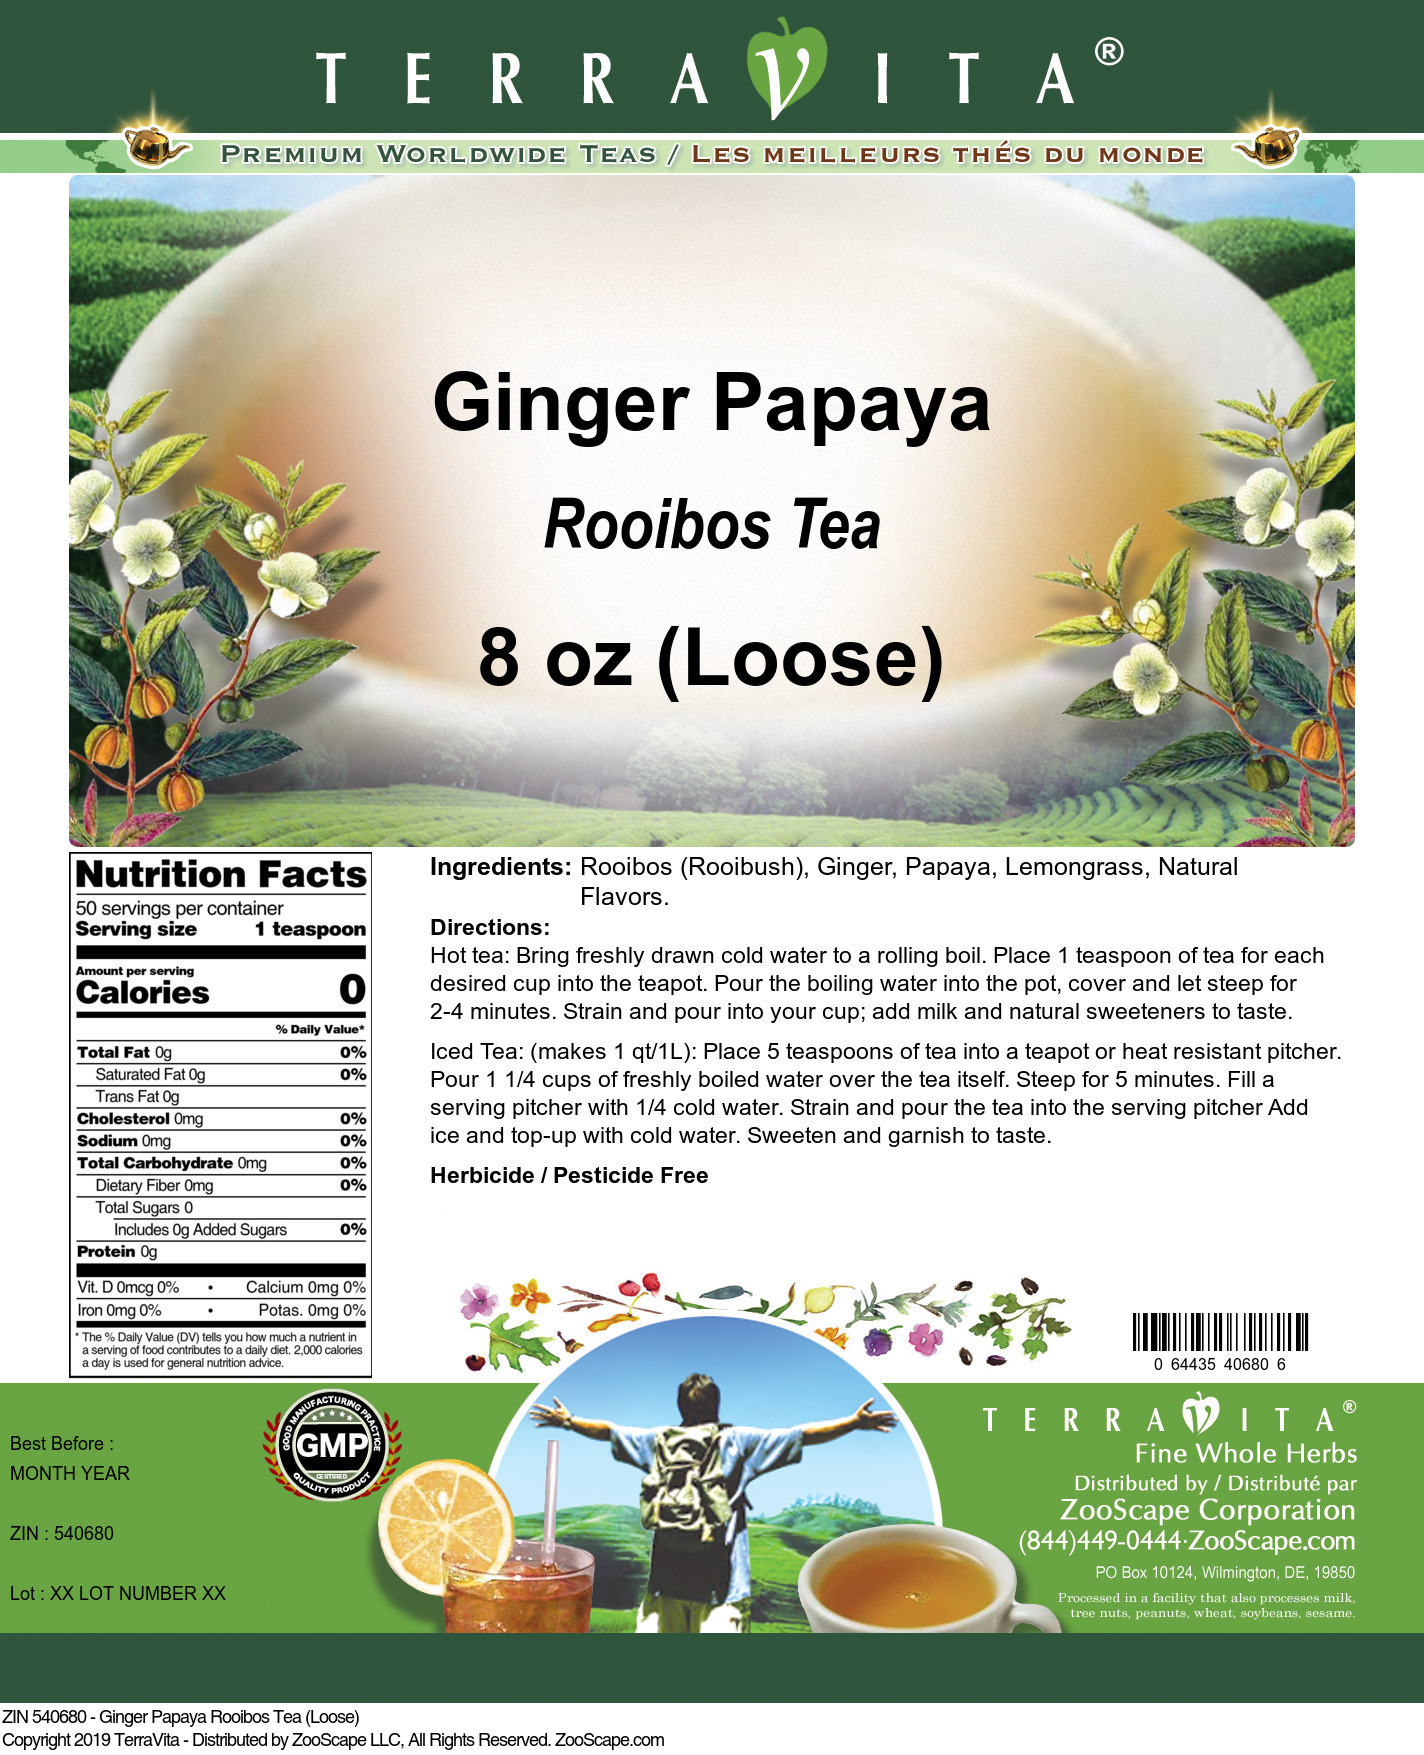 Ginger Papaya Rooibos Tea (Loose) - Label